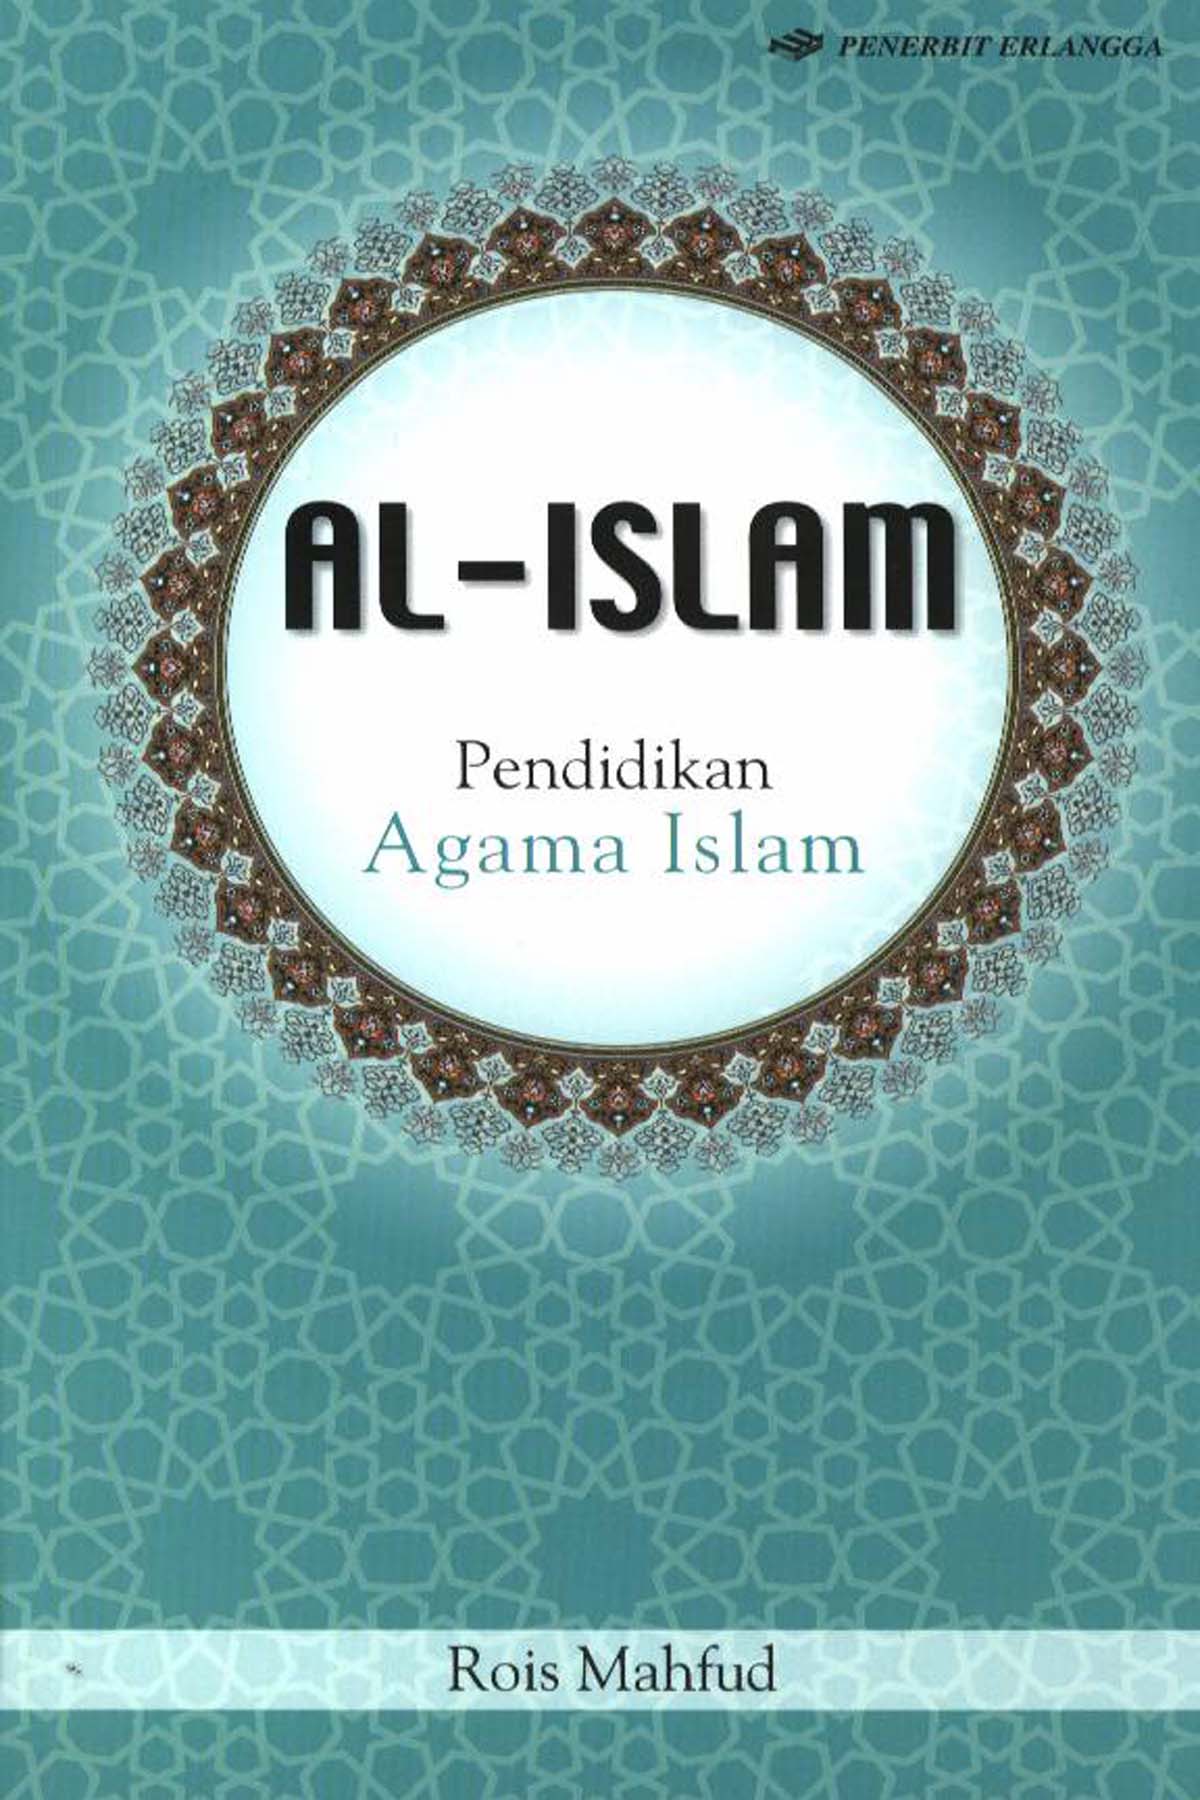 Al-Islam : Pendidikan agama Islam